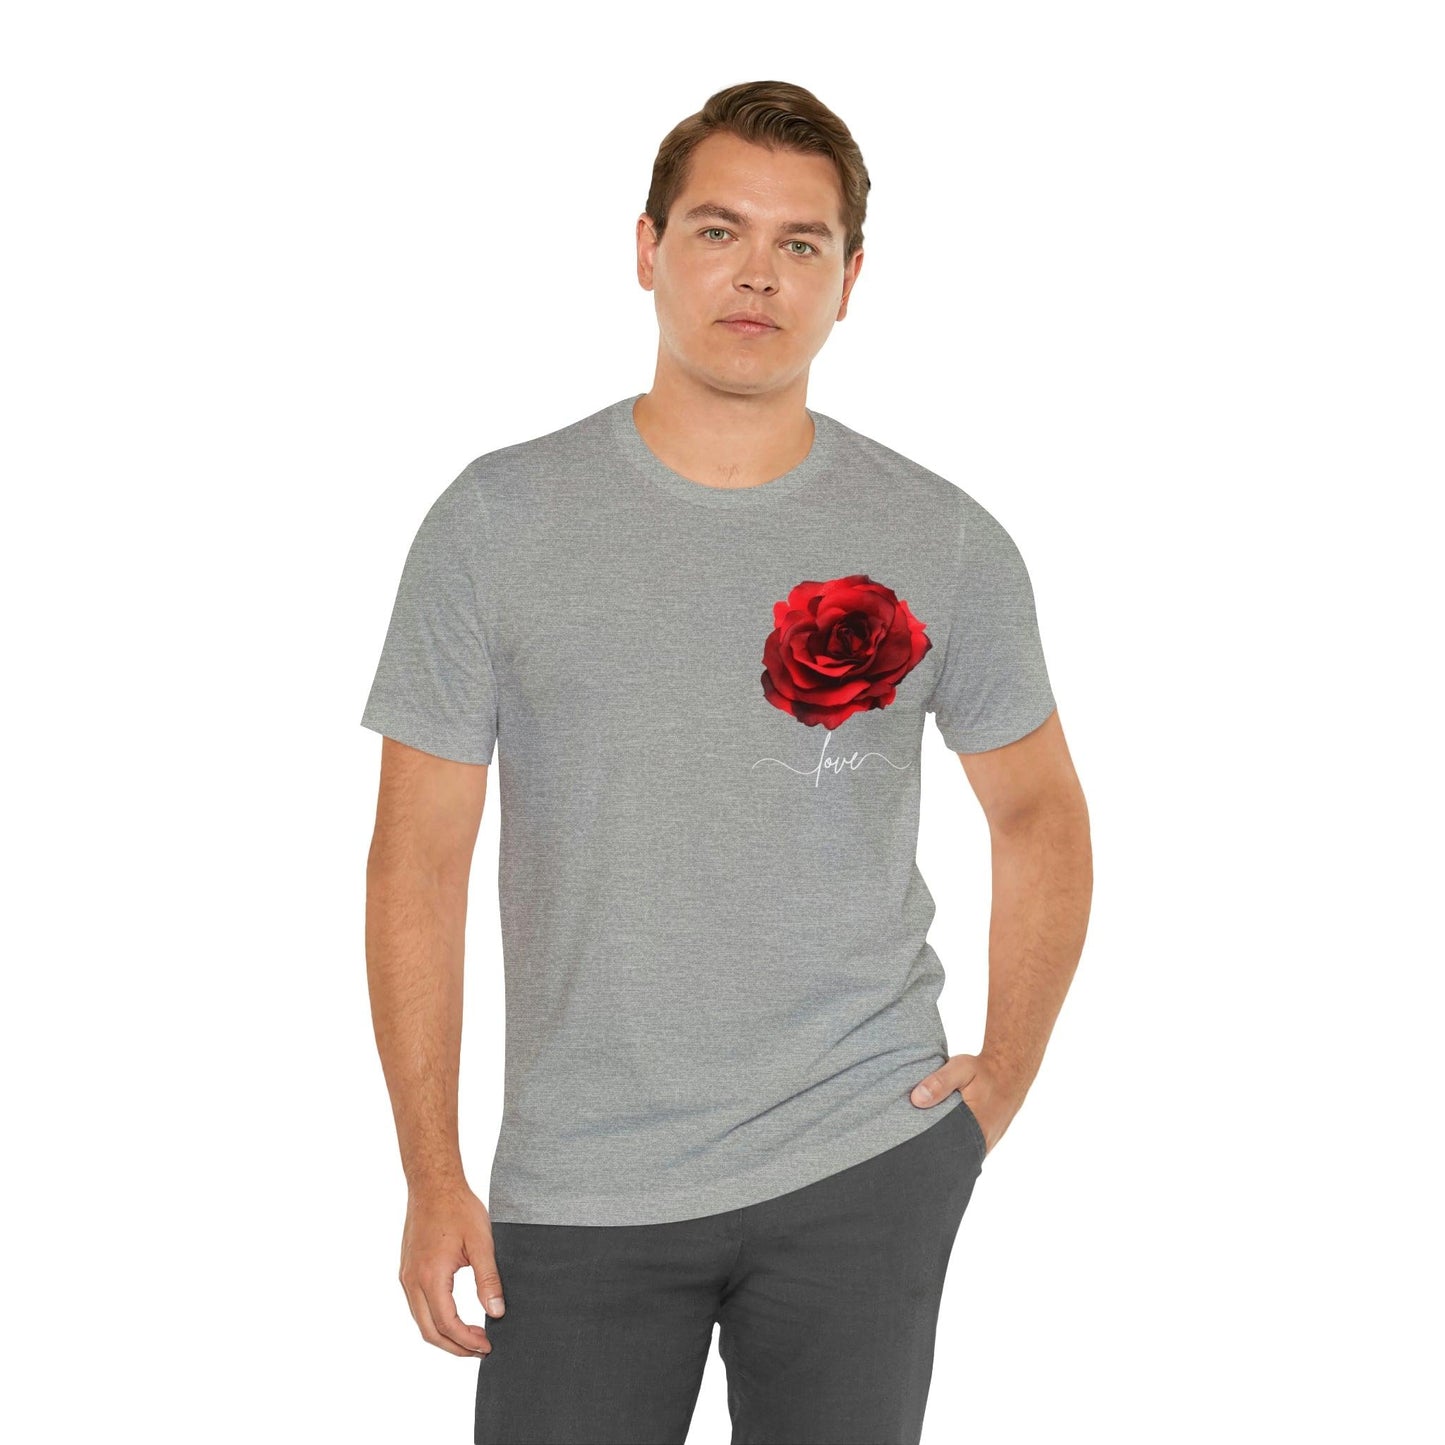 Love Rose Flower T-shirt for Women, Rose Graphic T-shirt, floral shirt, gift for her, love shirt